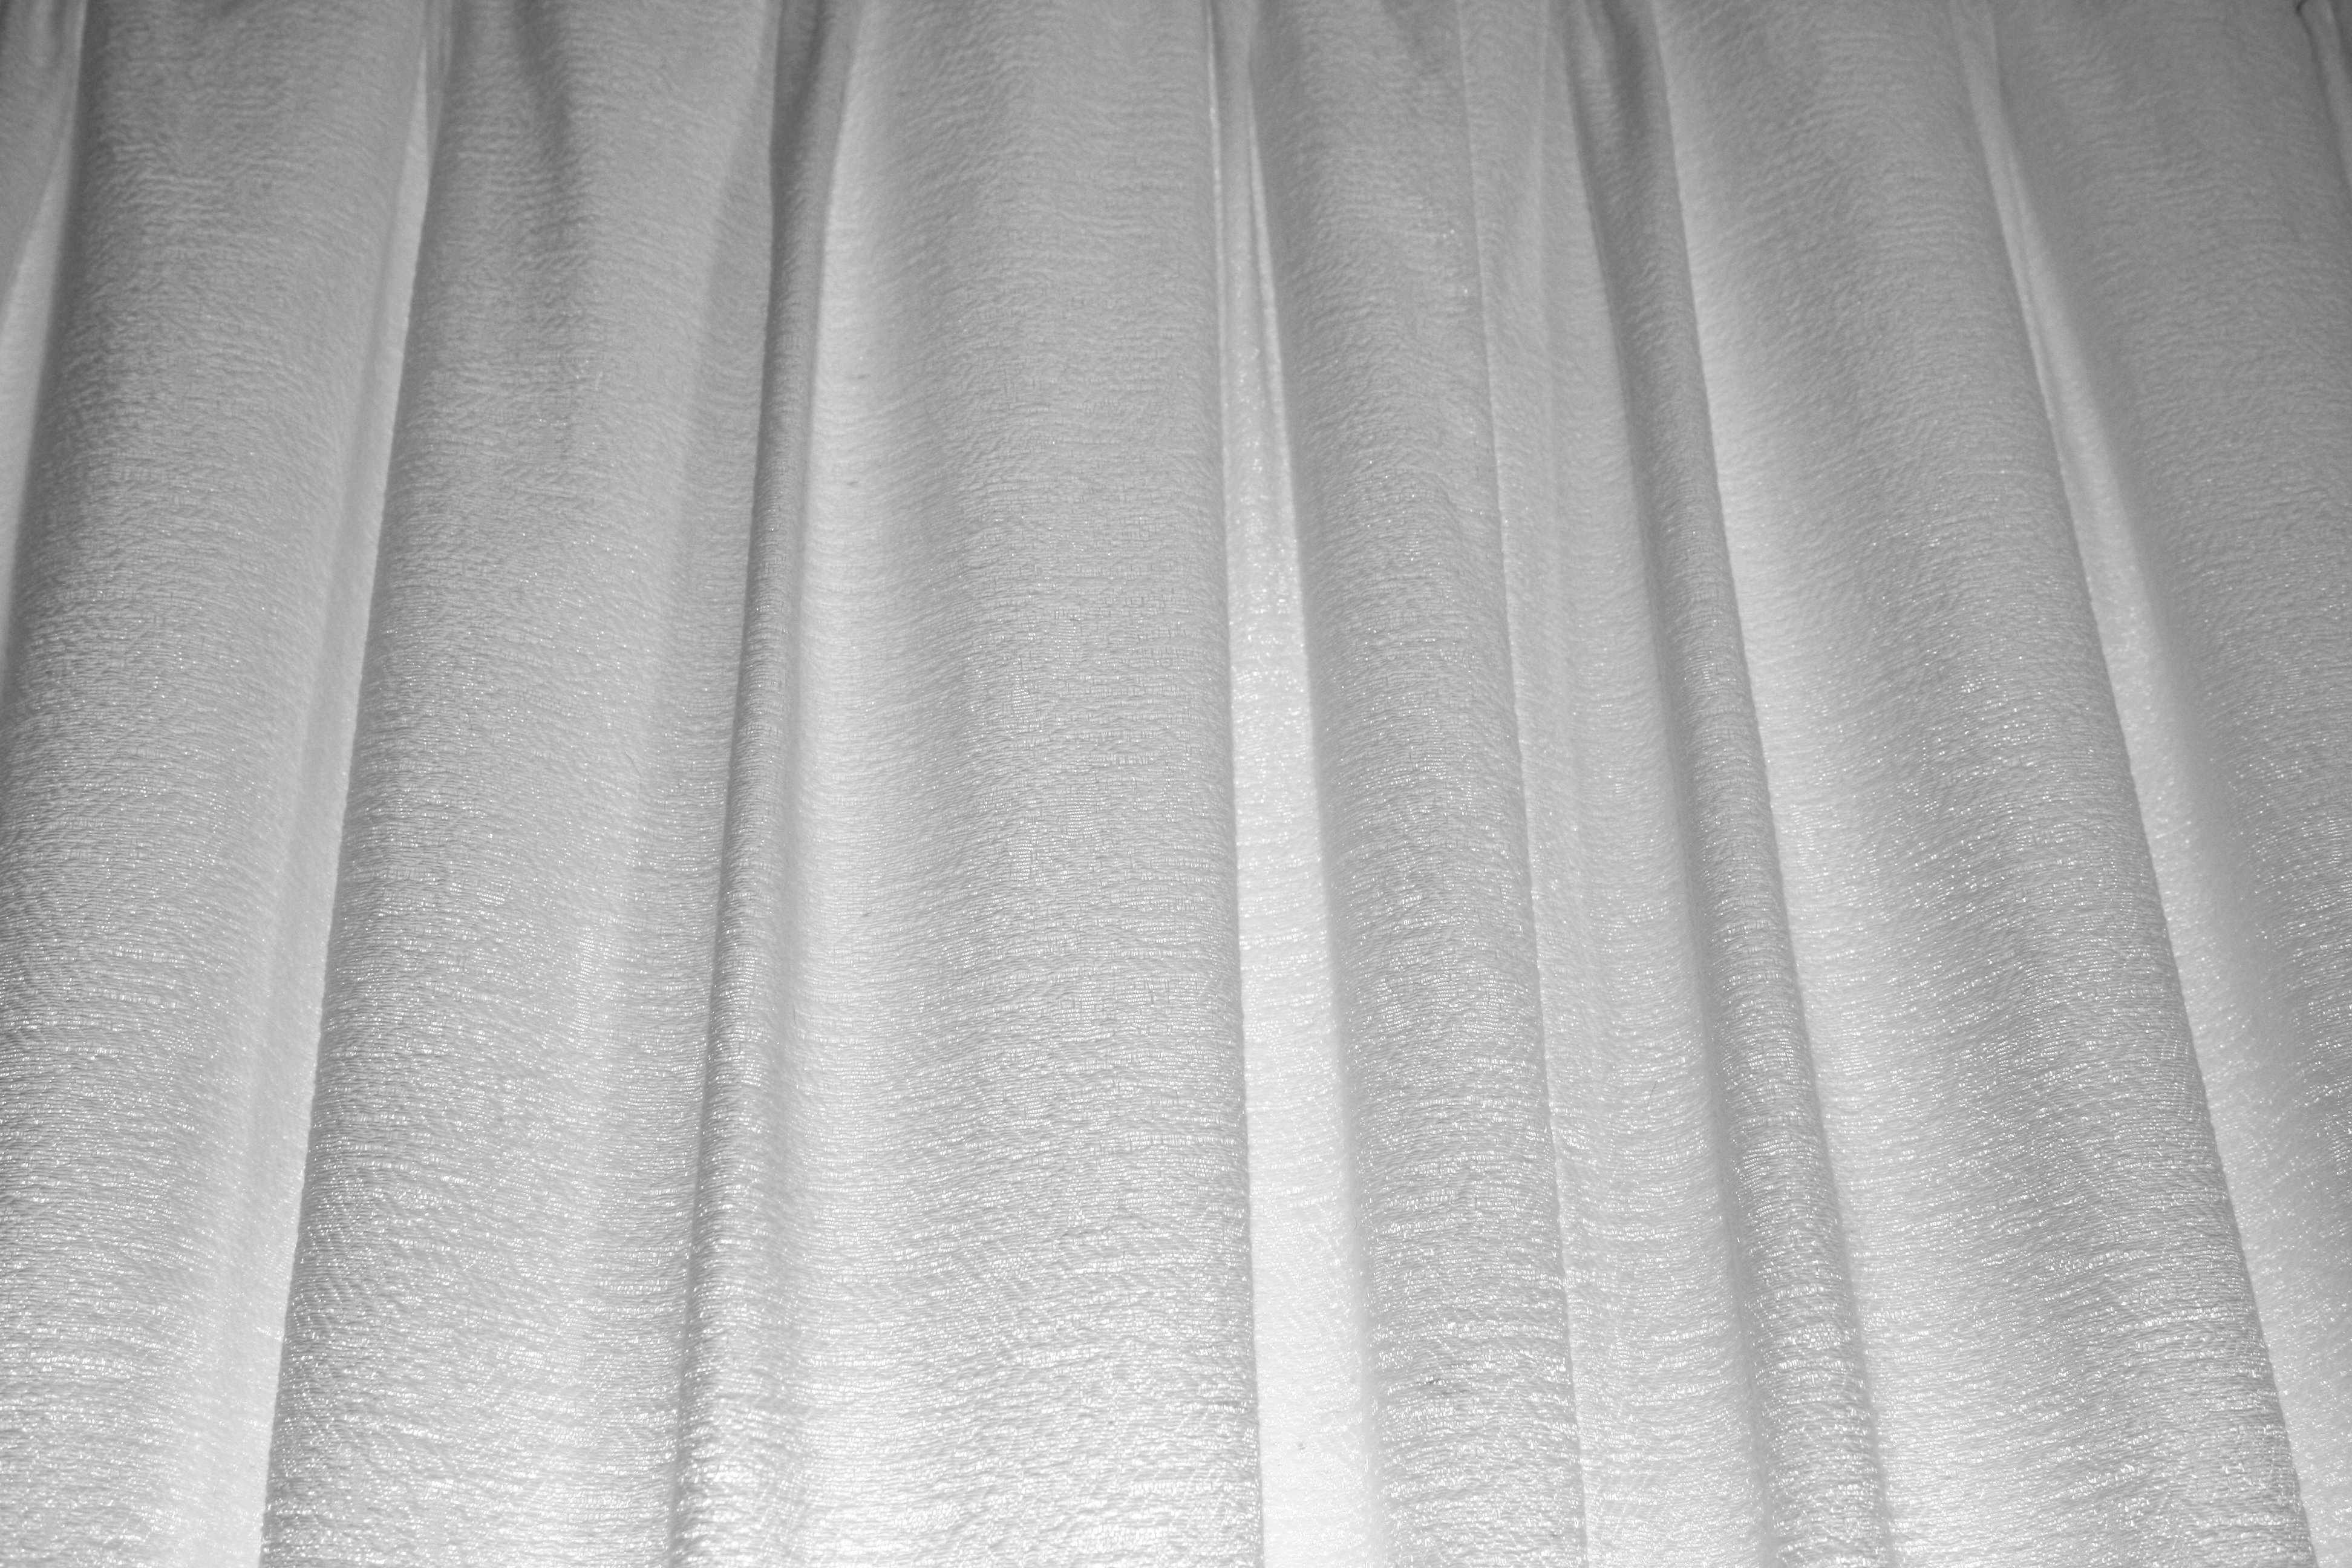 White Curtains Texture Picture Photograph Photos Public